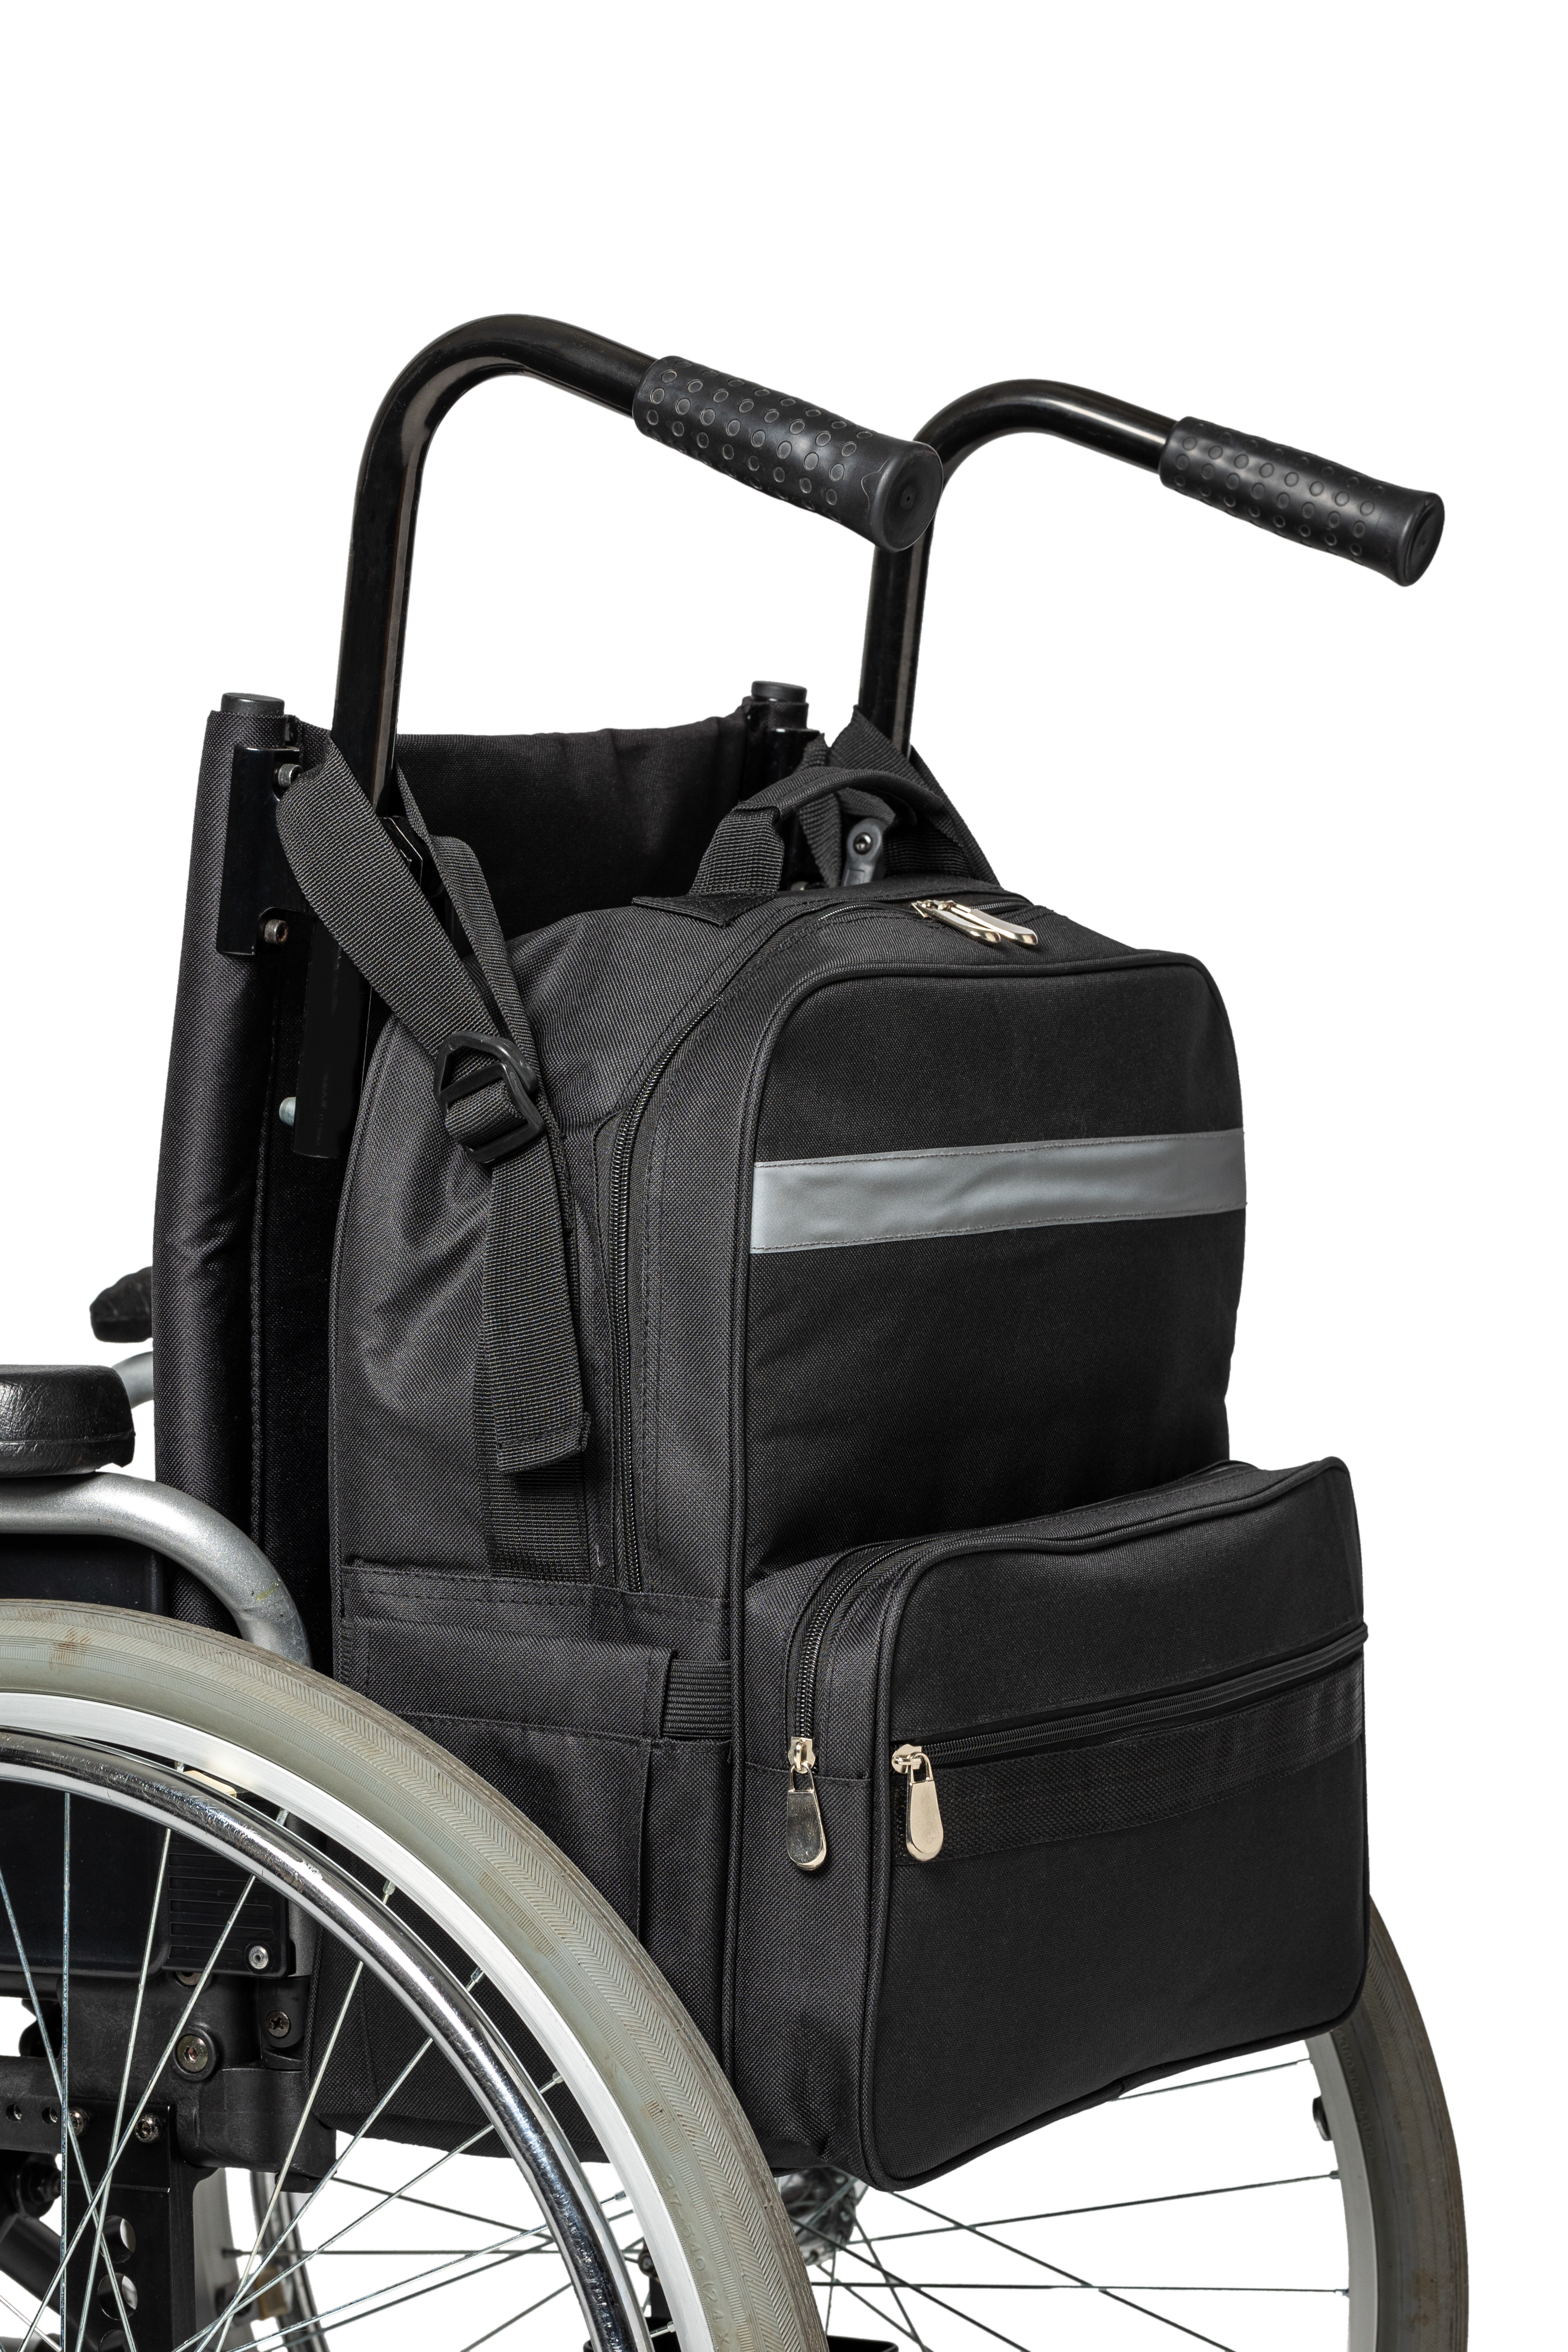 Rollstuhl - Tasche - für Profis und Gartenliebhaber